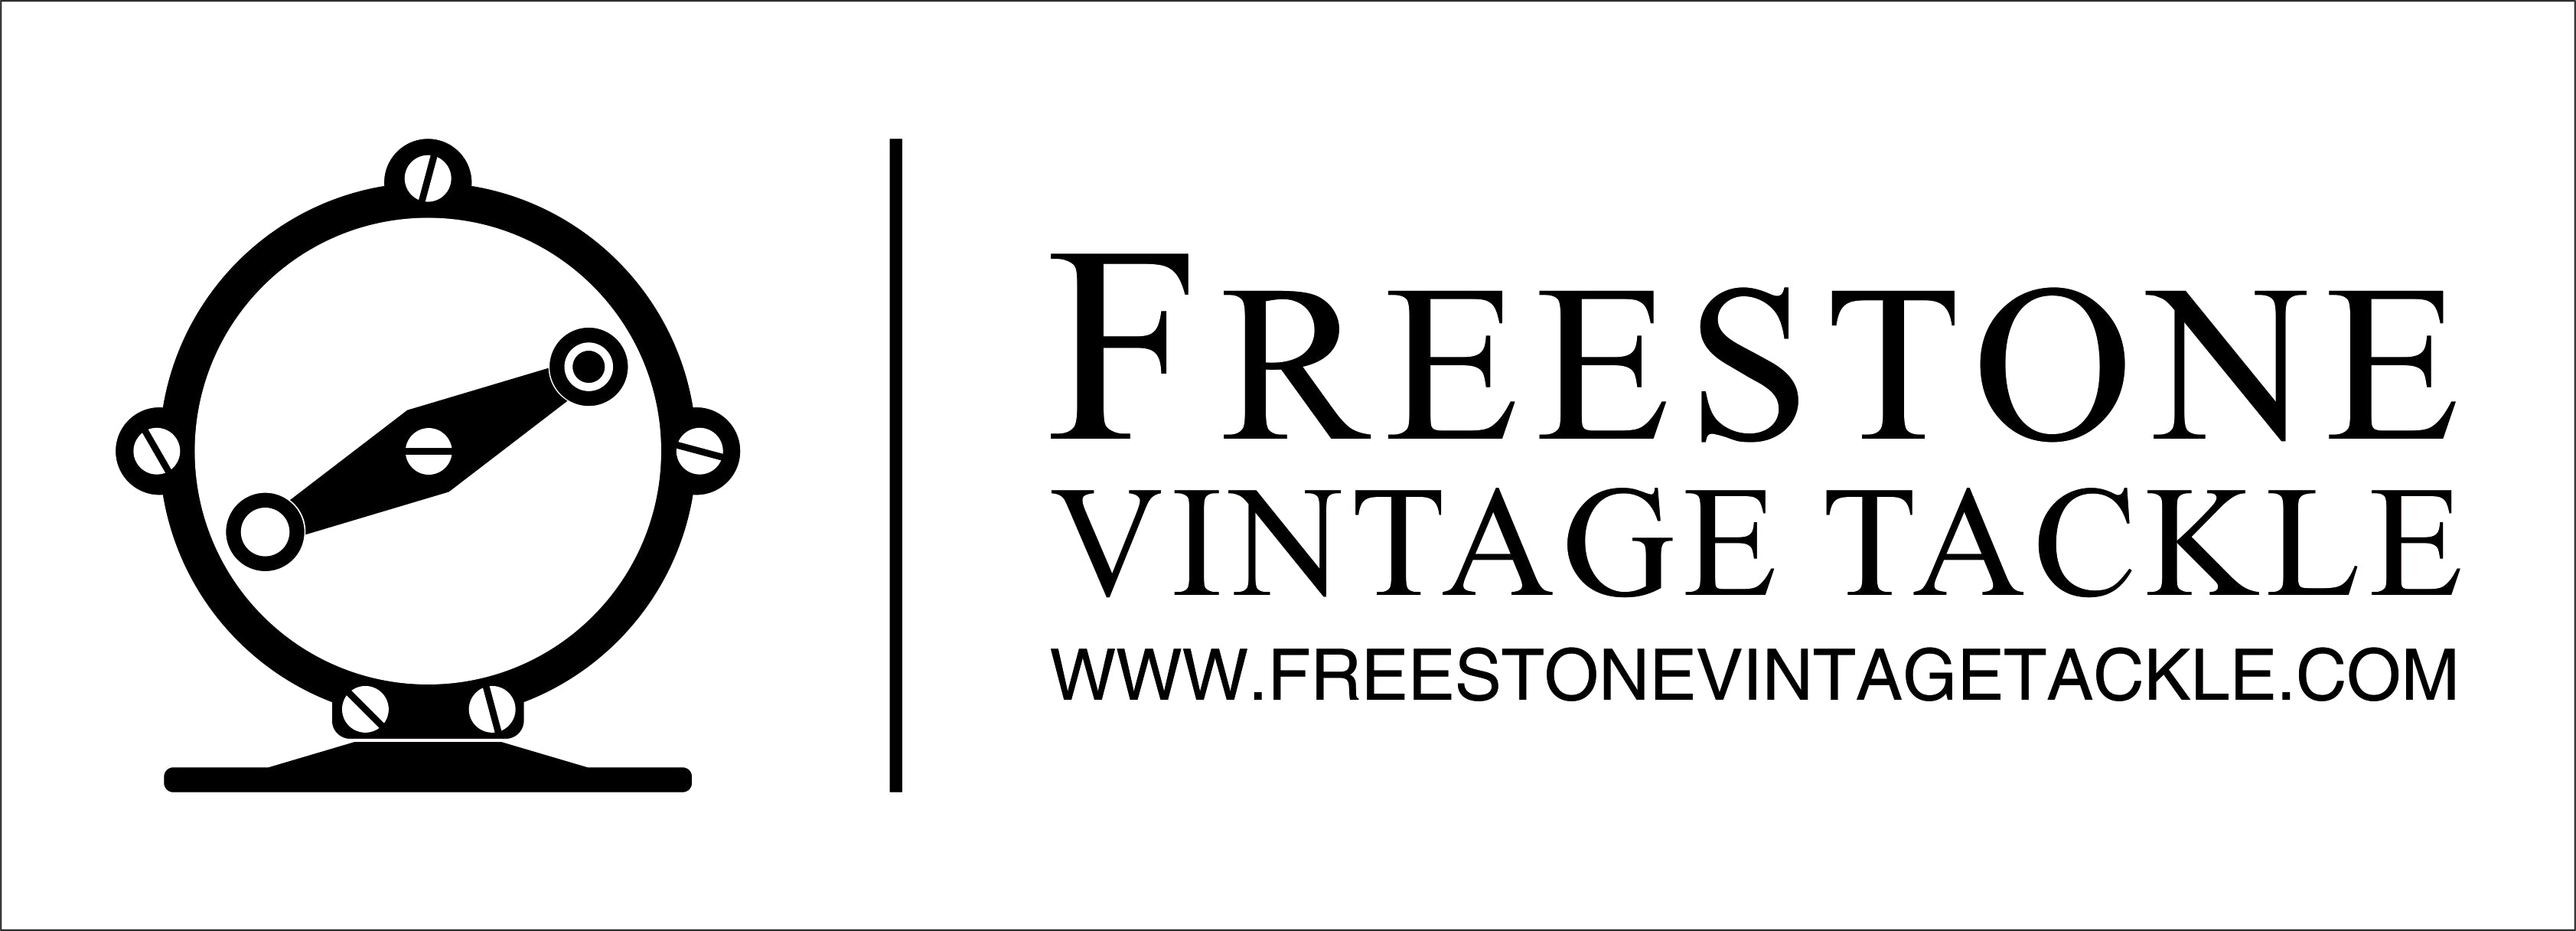 Kineya - Cavous BSc Fly Reel - Freestone Vintage Tackle